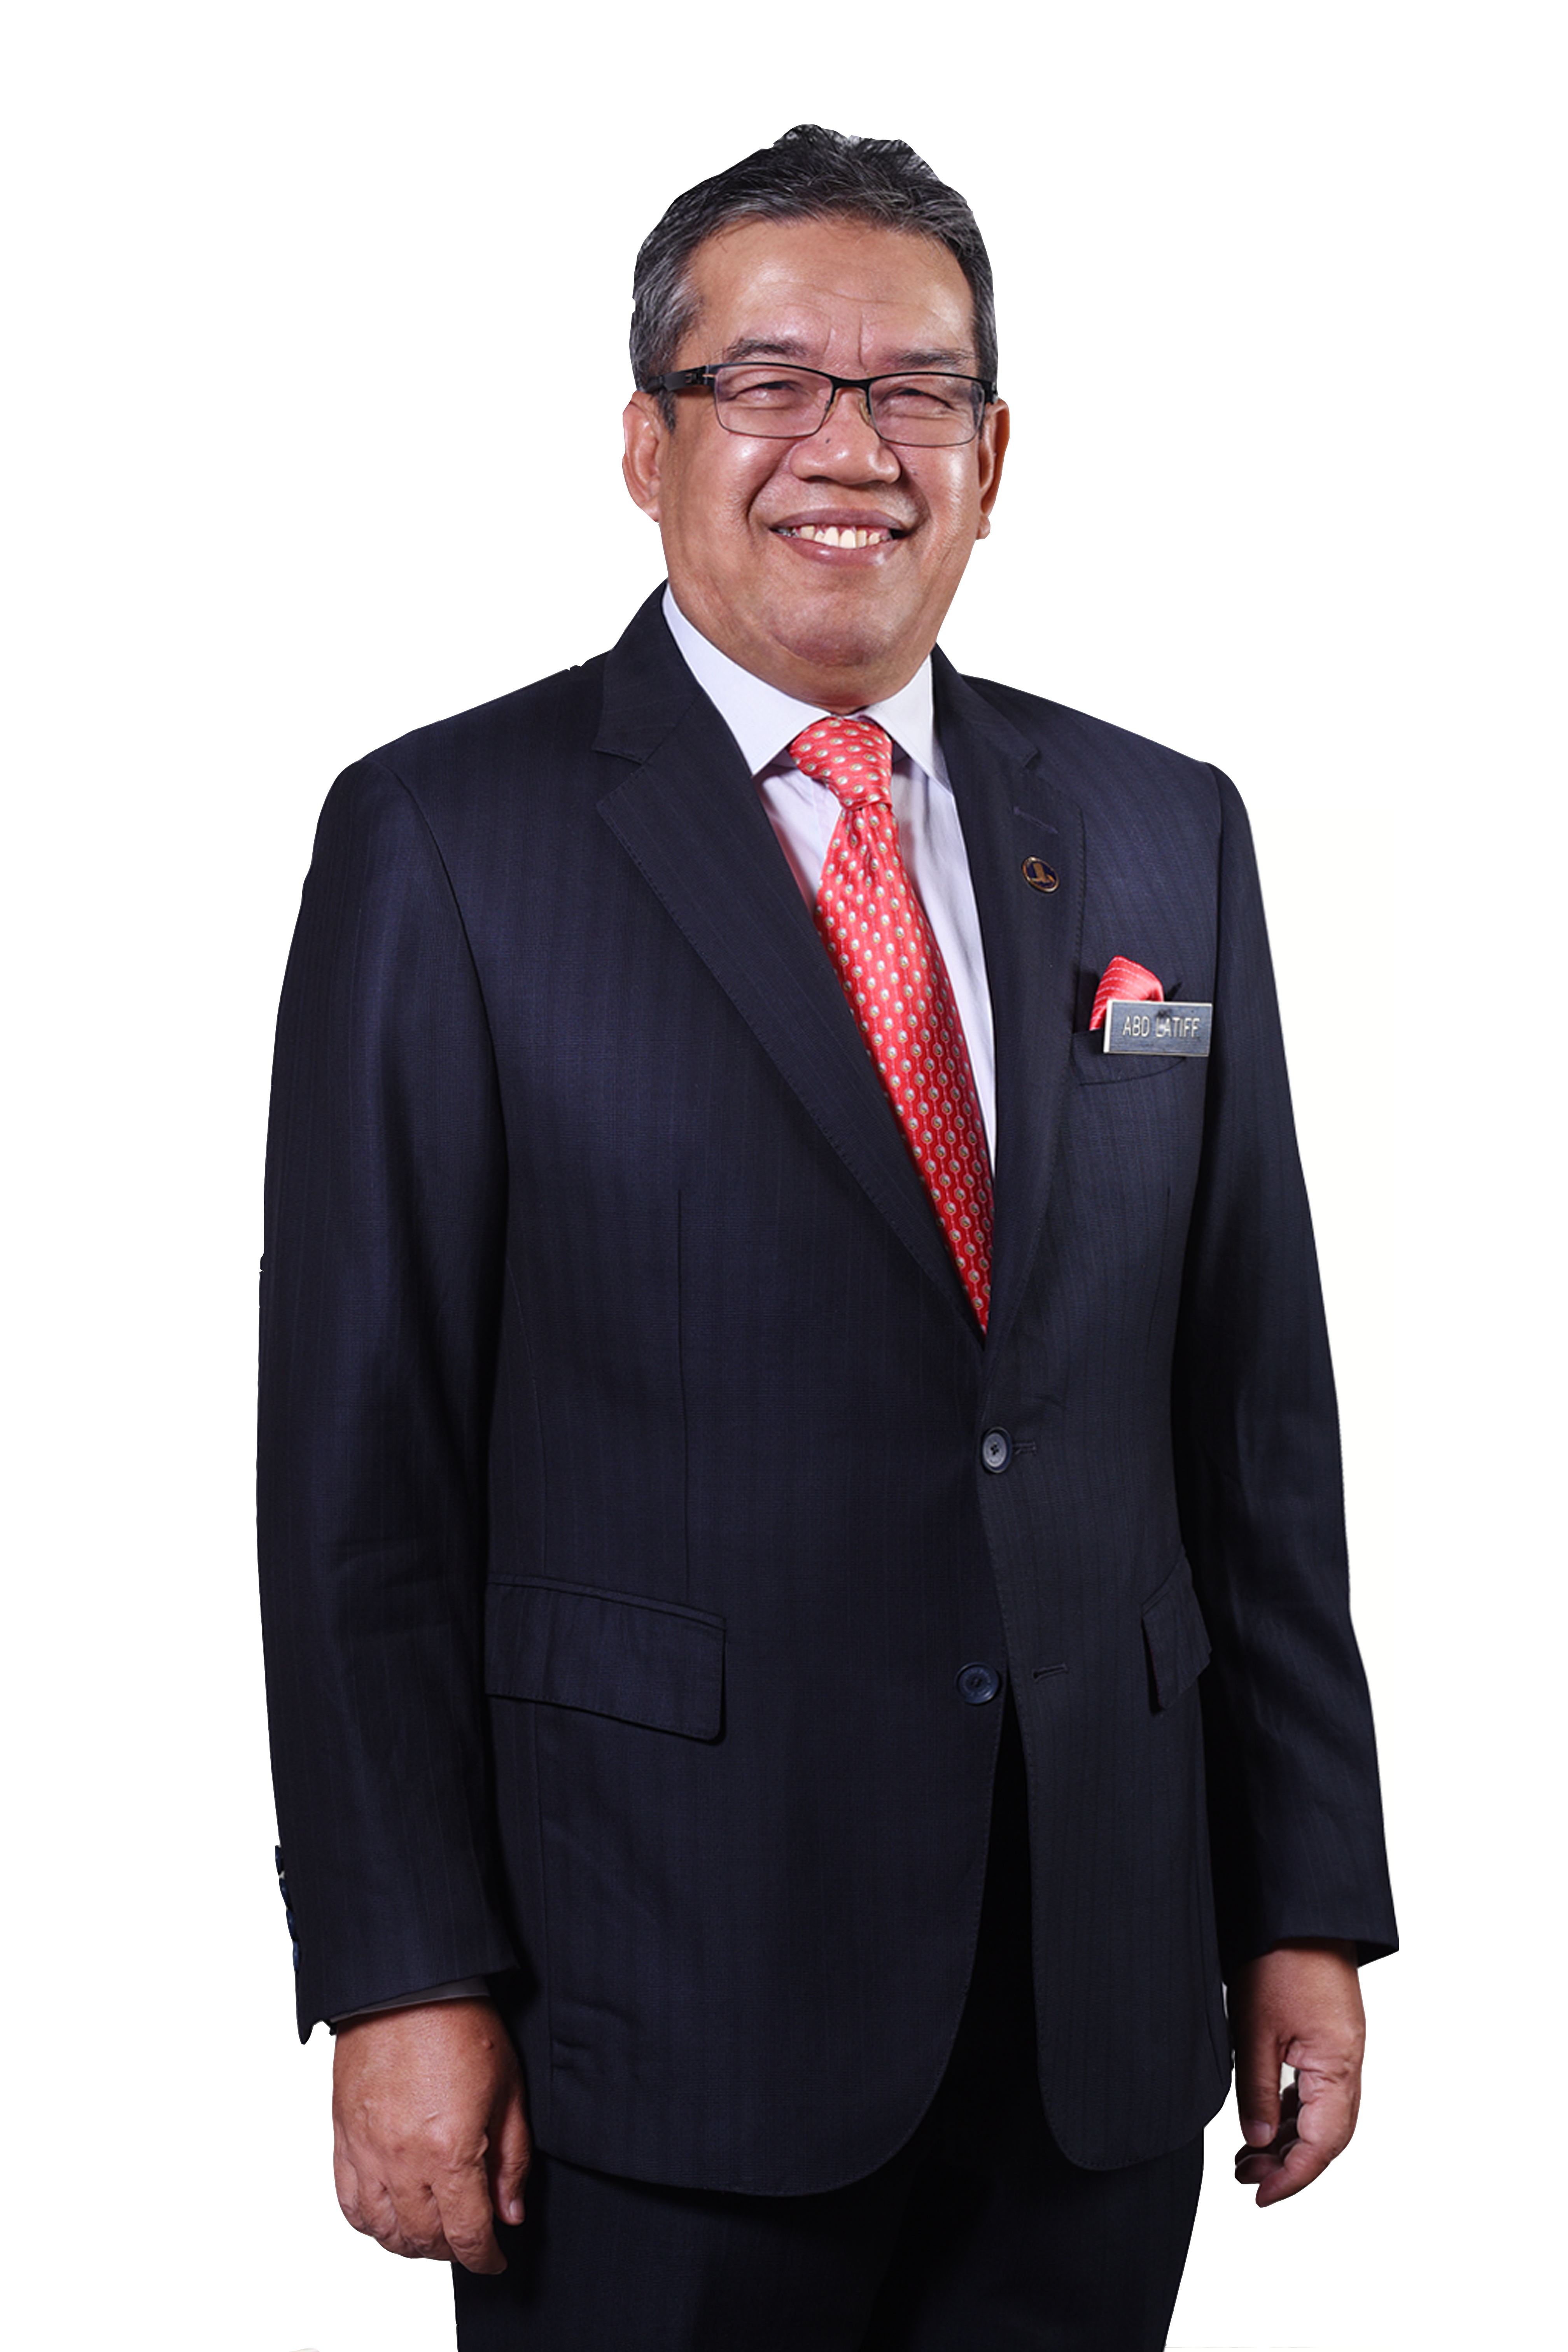 YB Dato' Dr. Haji Abdul Latiff Ahmad